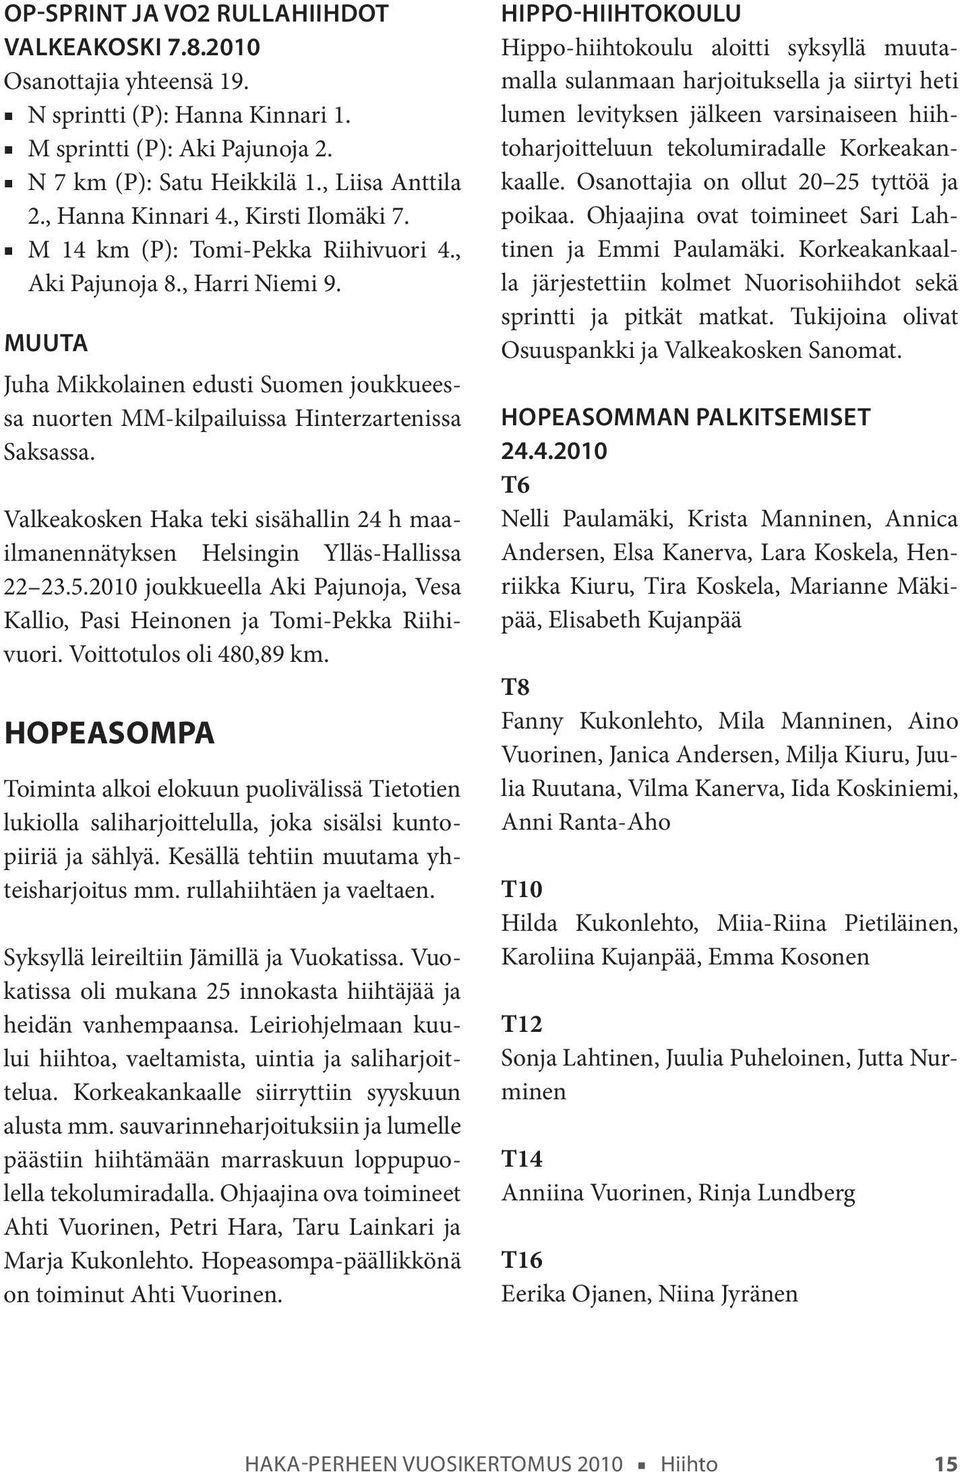 Muuta Juha Mikkolainen edusti Suomen joukkueessa nuorten MM-kilpailuissa Hinterzartenissa Saksassa. Valkeakosken Haka teki sisähallin 24 h maailmanennätyksen Helsingin Ylläs-Hallissa 22 23.5.